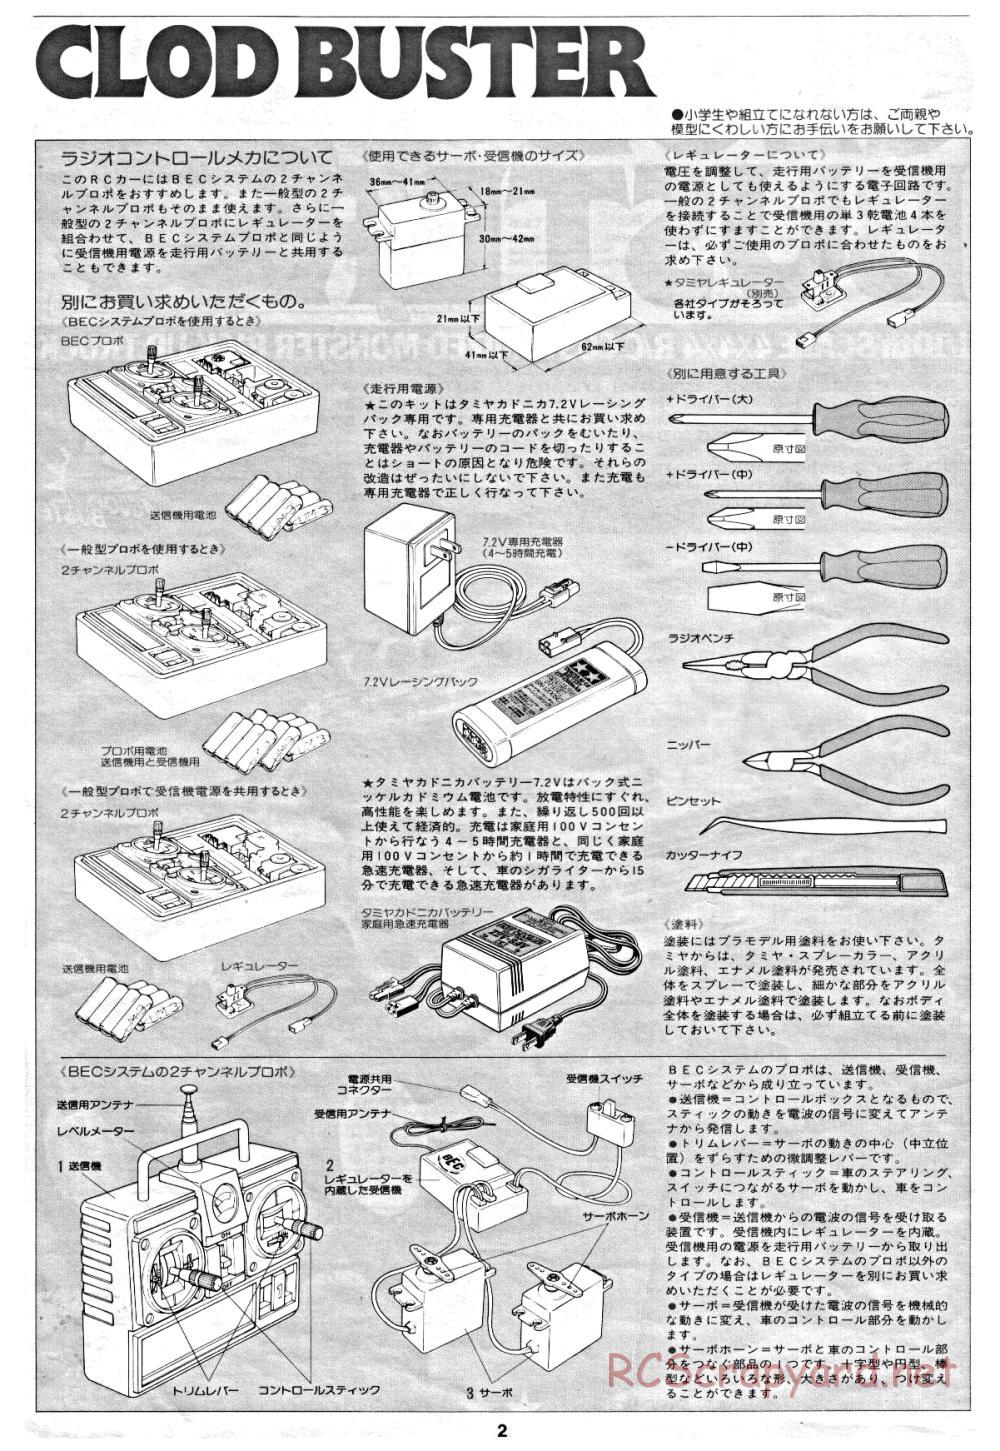 Tamiya - Clod Buster - 58065 - Manual - Page 2